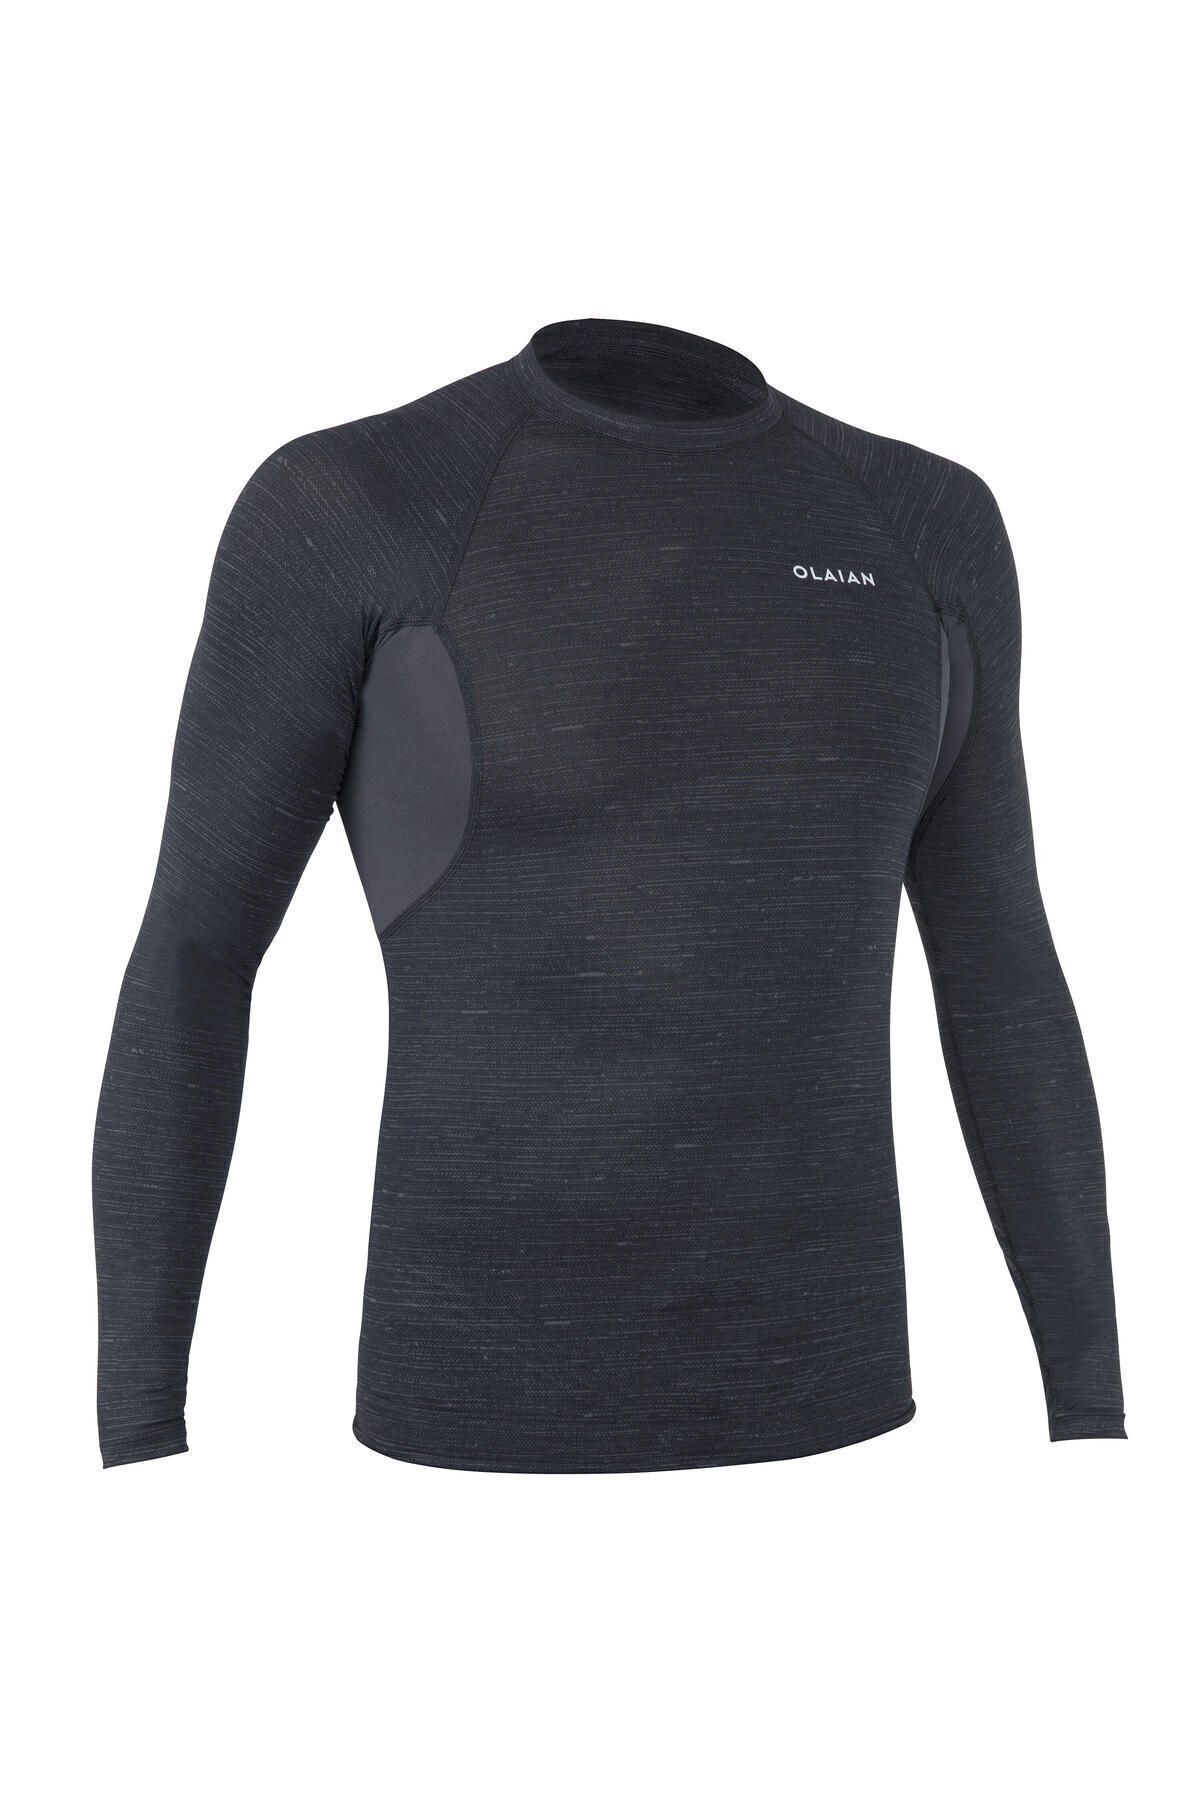 Decathlon Erkek Slim Fit Uzun Kollu UV Korumalı Tişört - Siyah - 900